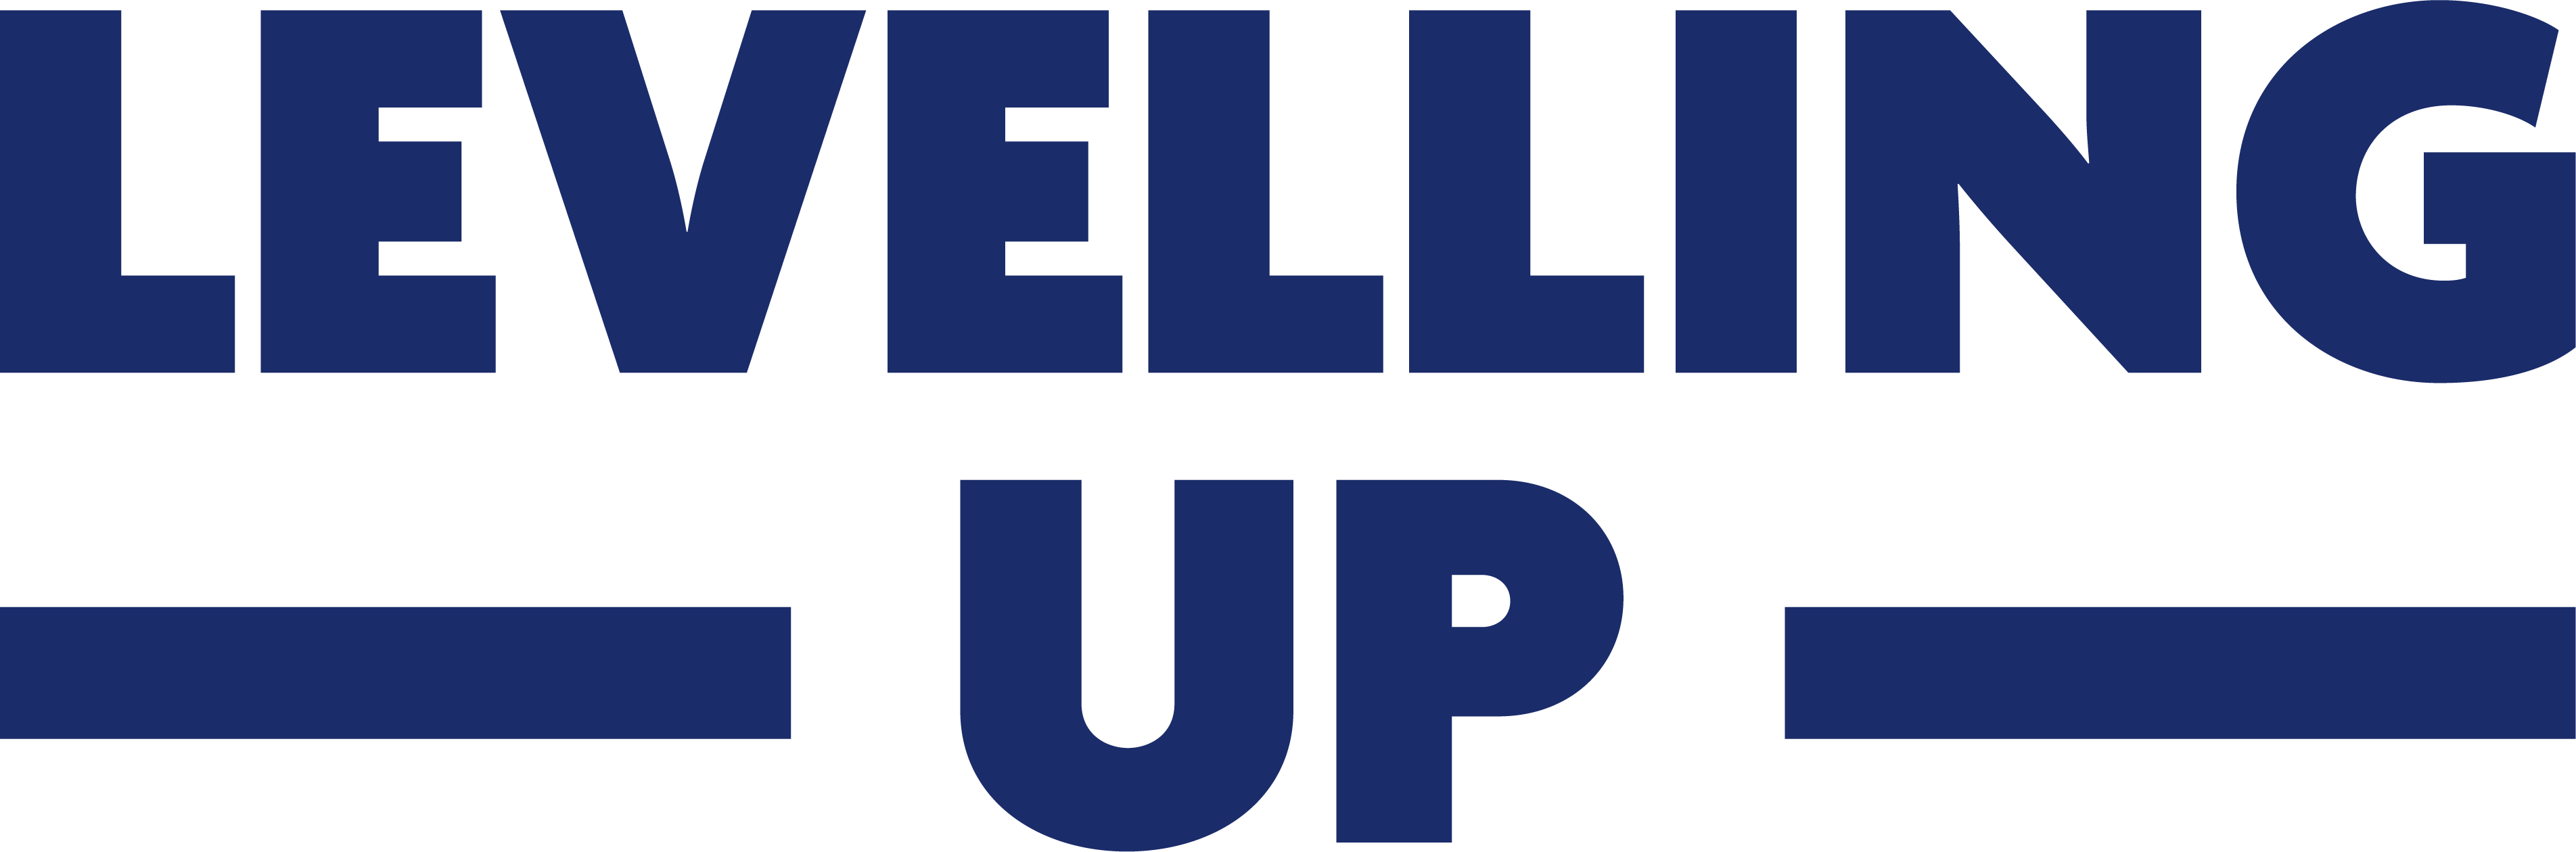 Levelling Up logo English